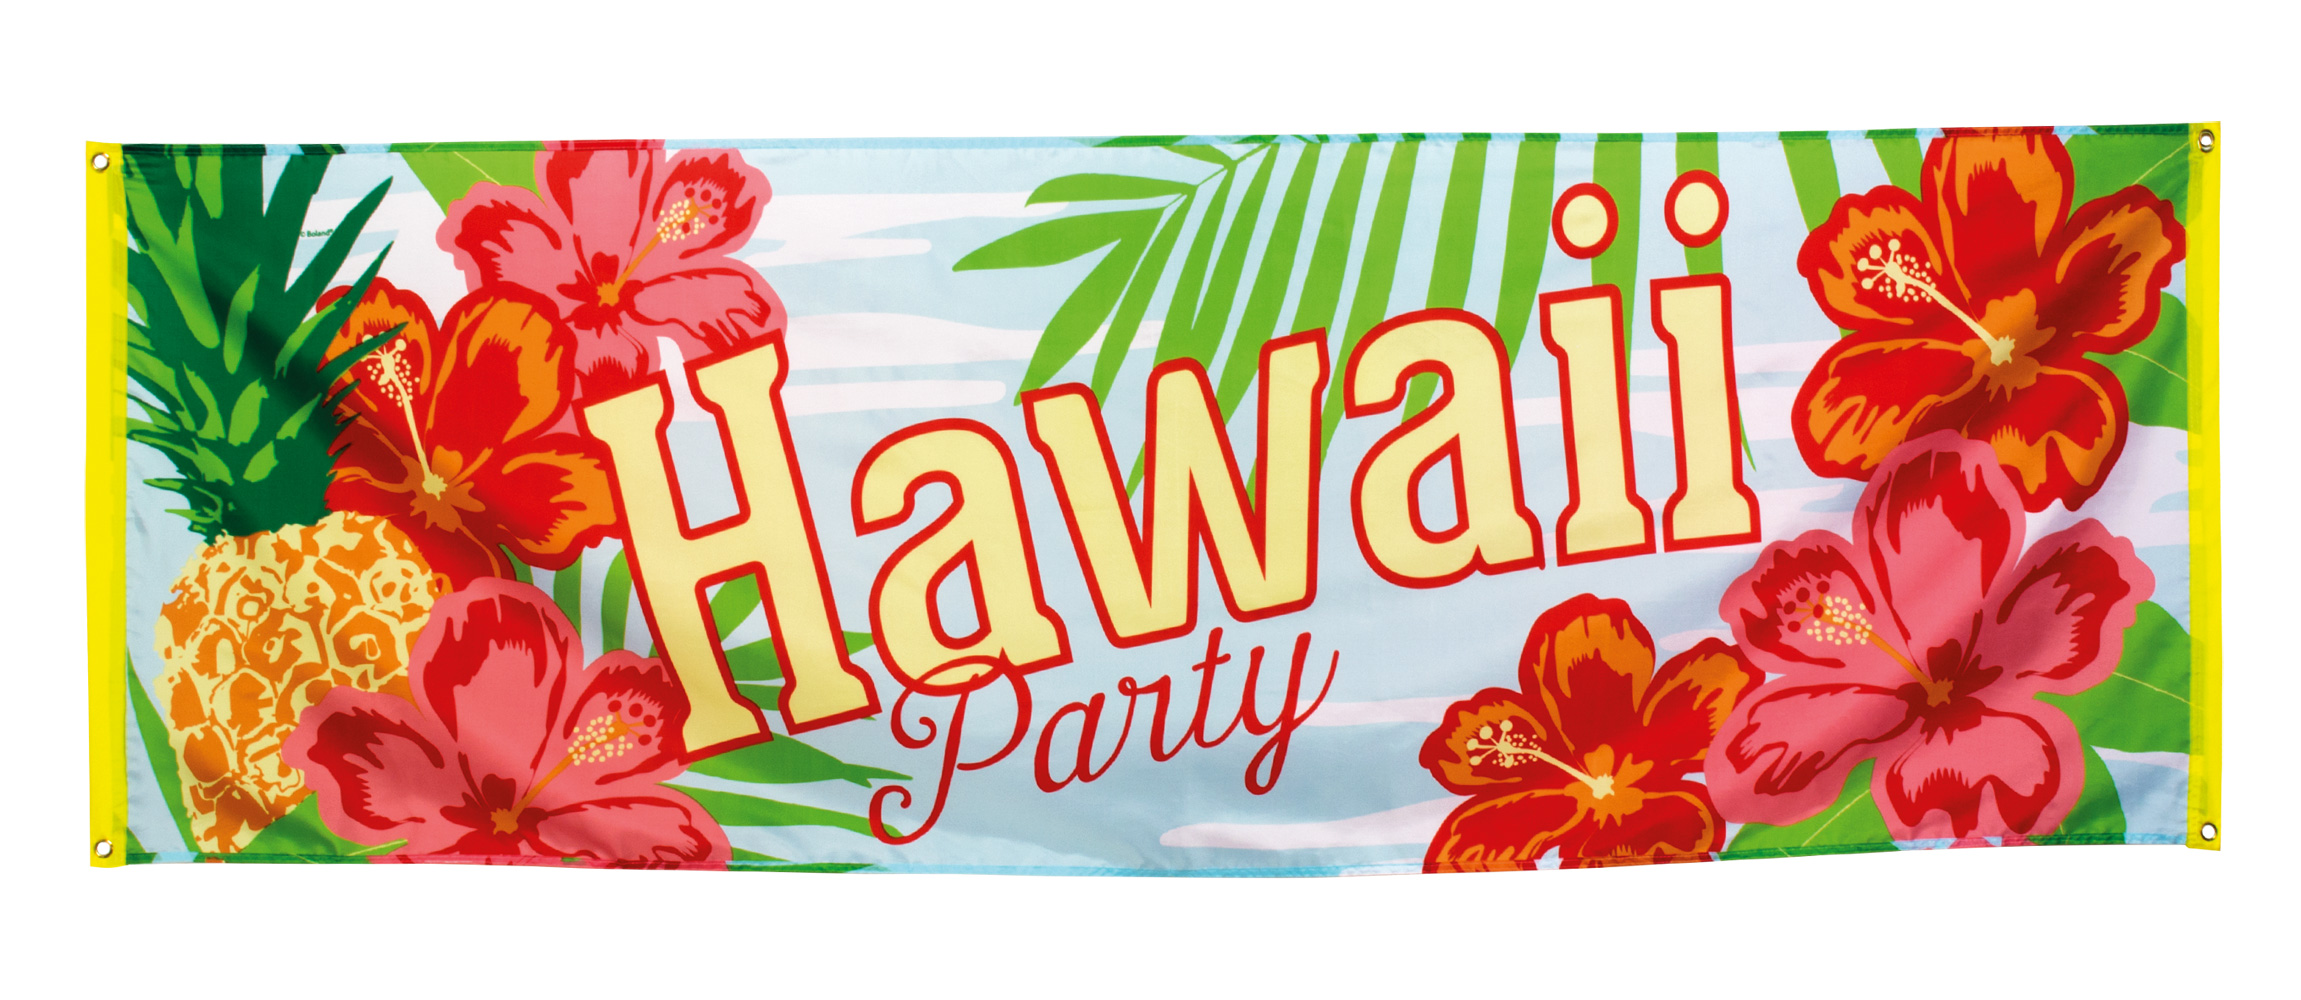 Bannière - Hawaï Party - Paradise